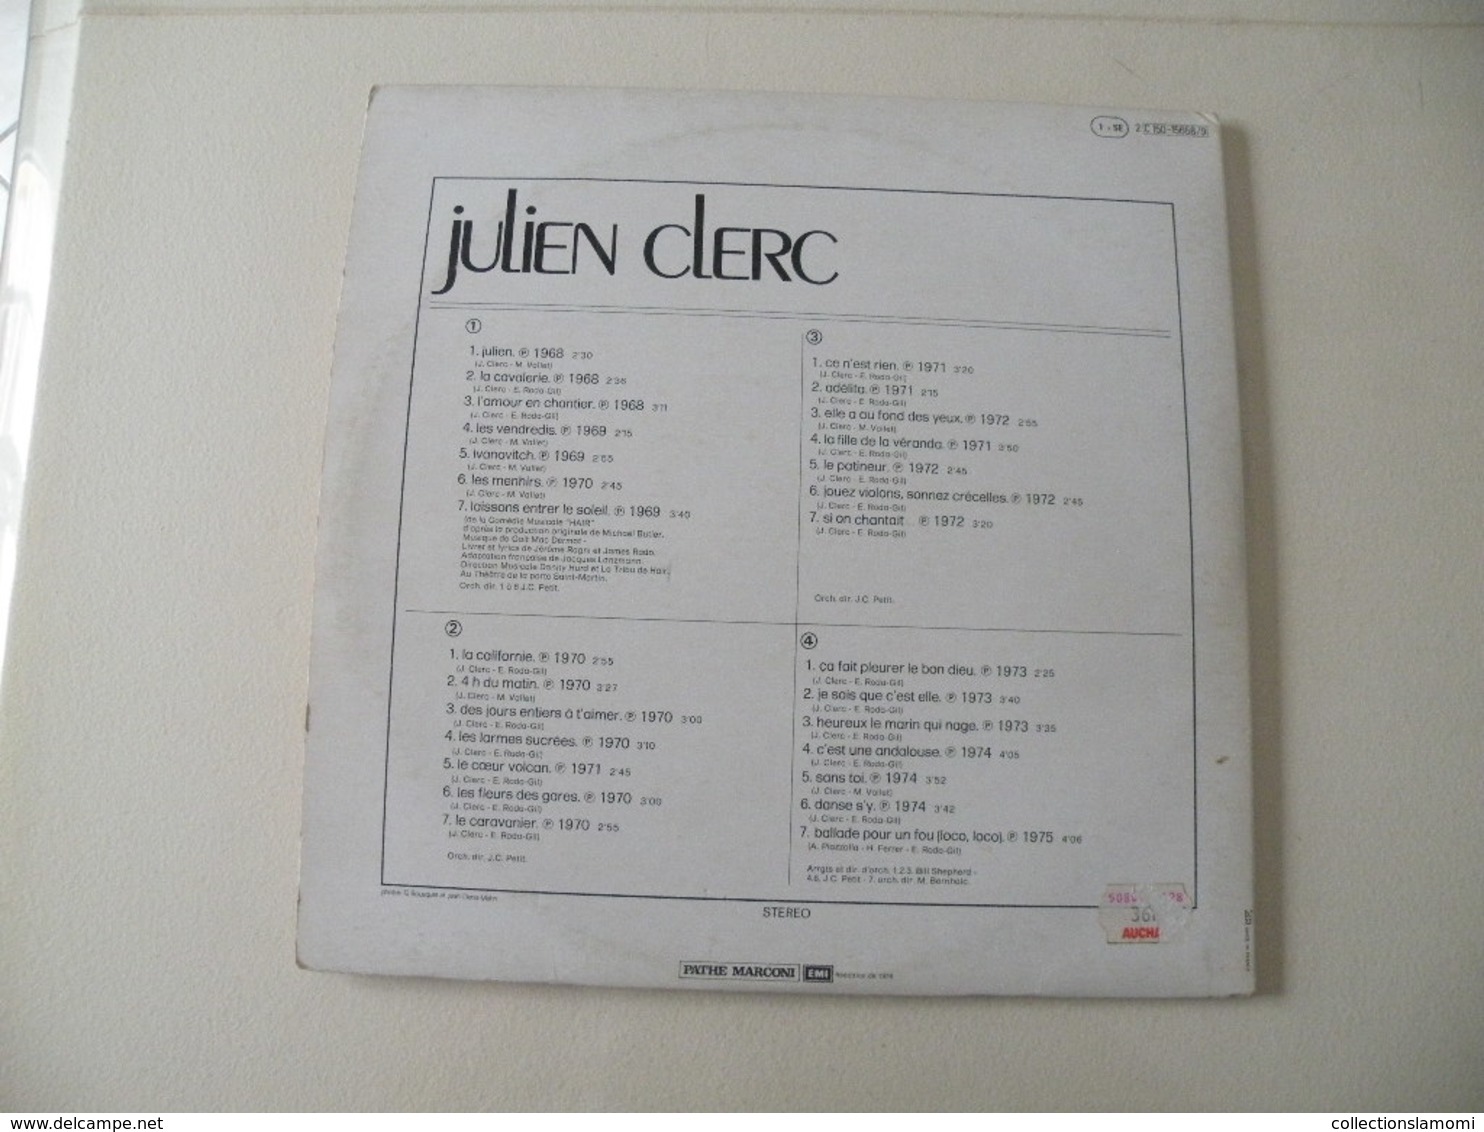 Julien Clerc - 1968/69/70/71/72/73/74/75 (Titres sur photos) - Vinyle 33 T LP Double Album